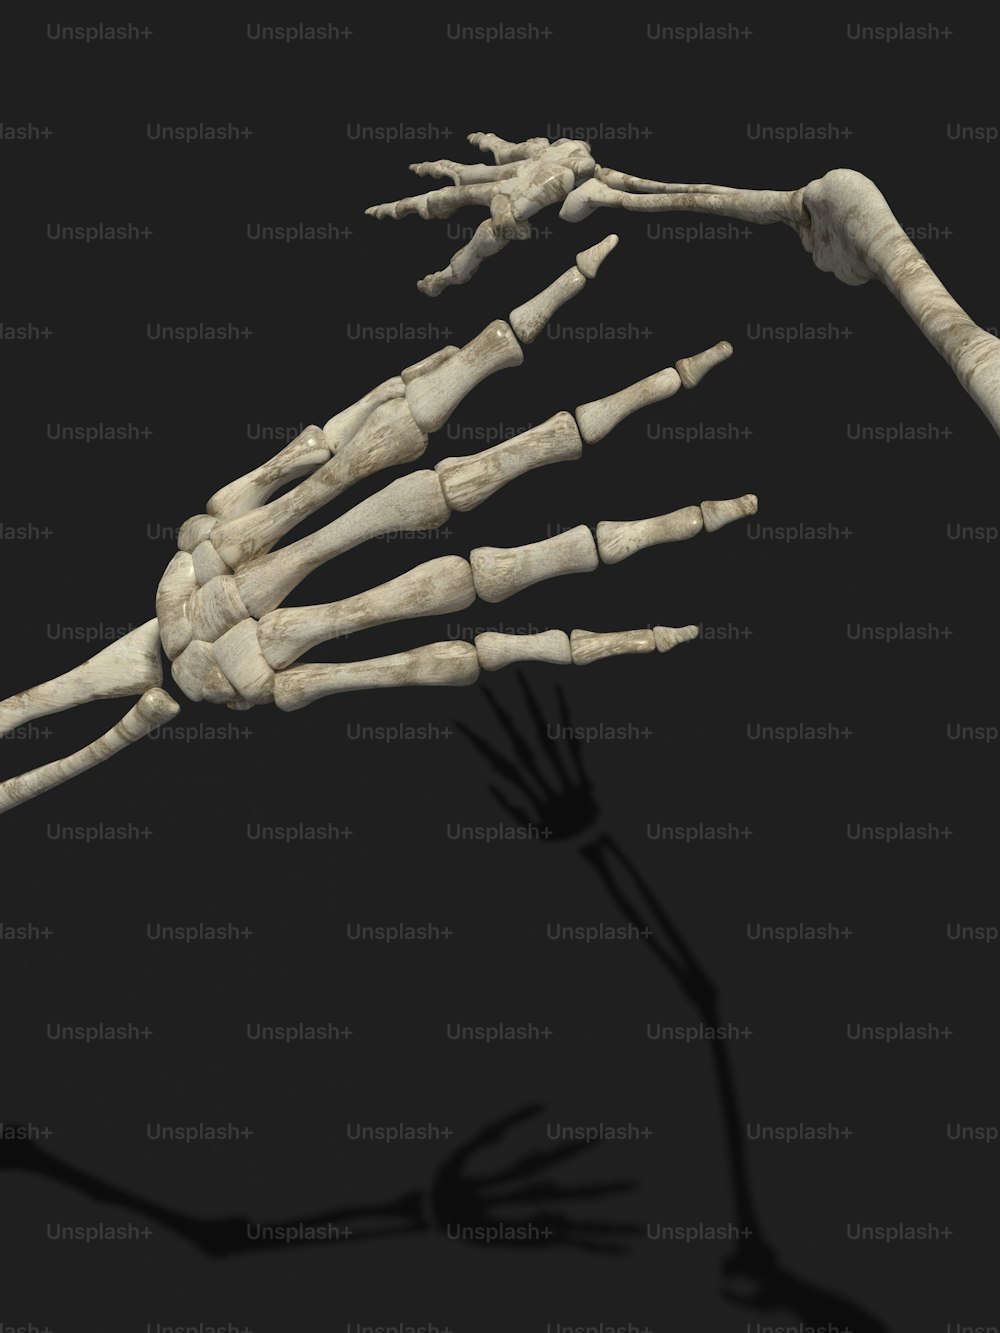 Lo scheletro di una persona è mostrato in questa immagine